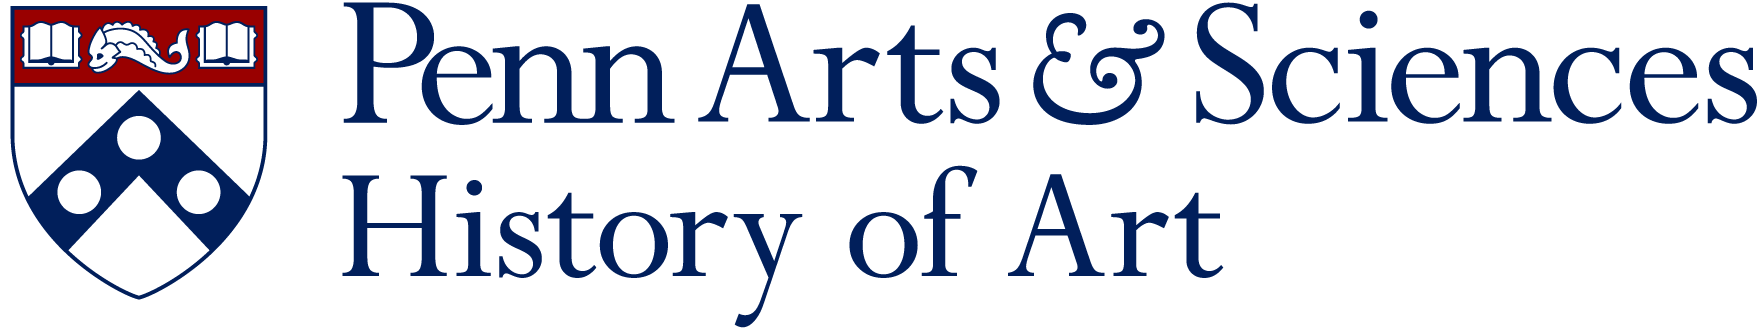 Penn History of Art logo.